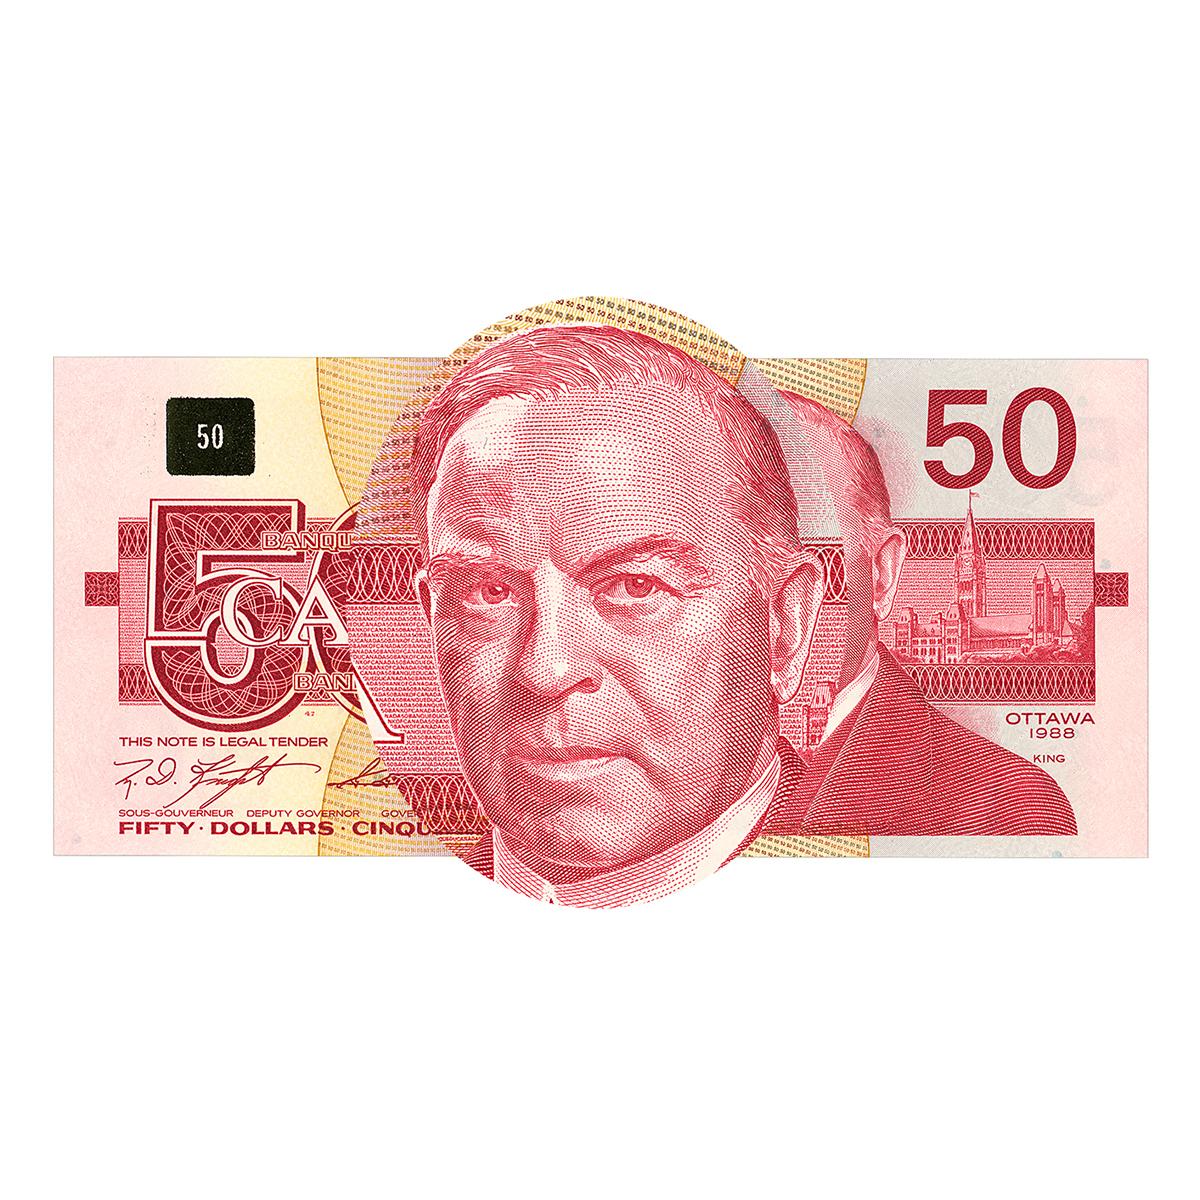 Portrait sur un billet de banque d’un homme presque chauve portant un complet.